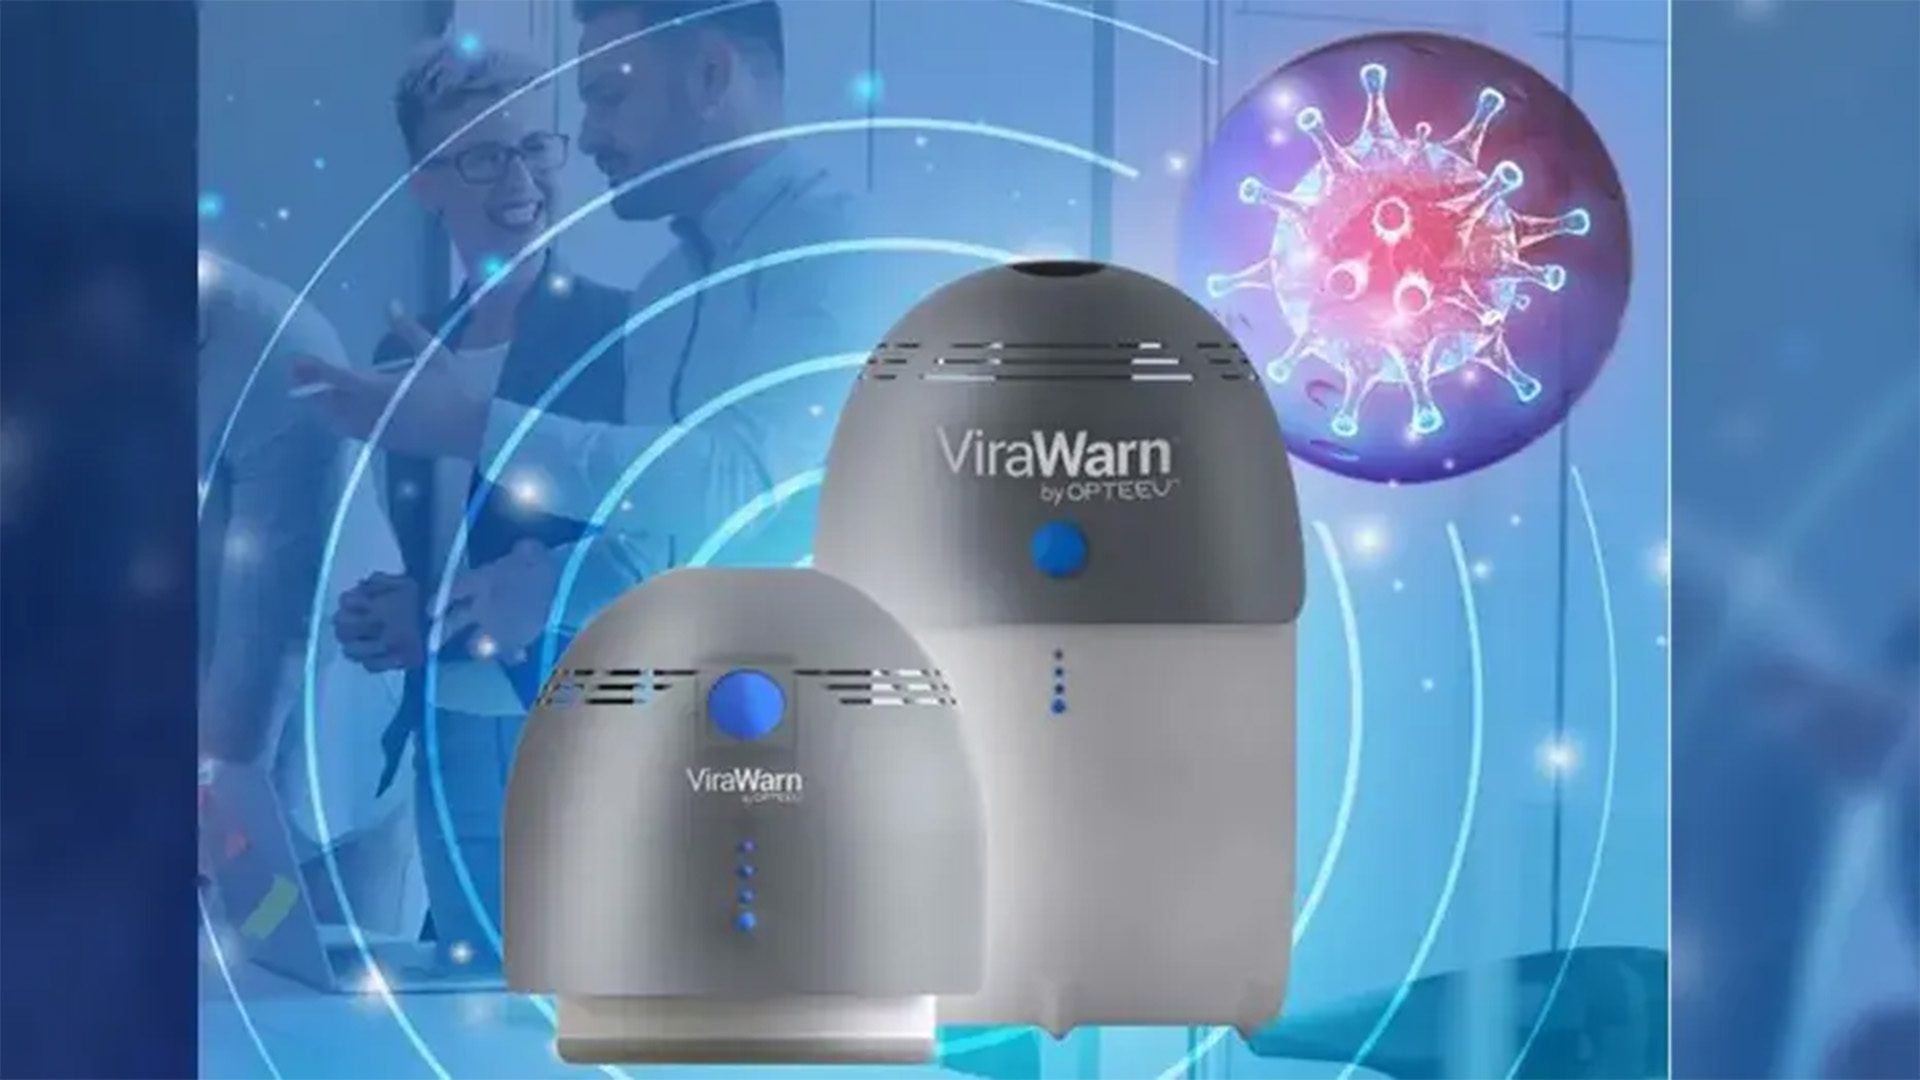 Opteev's Virawarn Portable Virus Detector